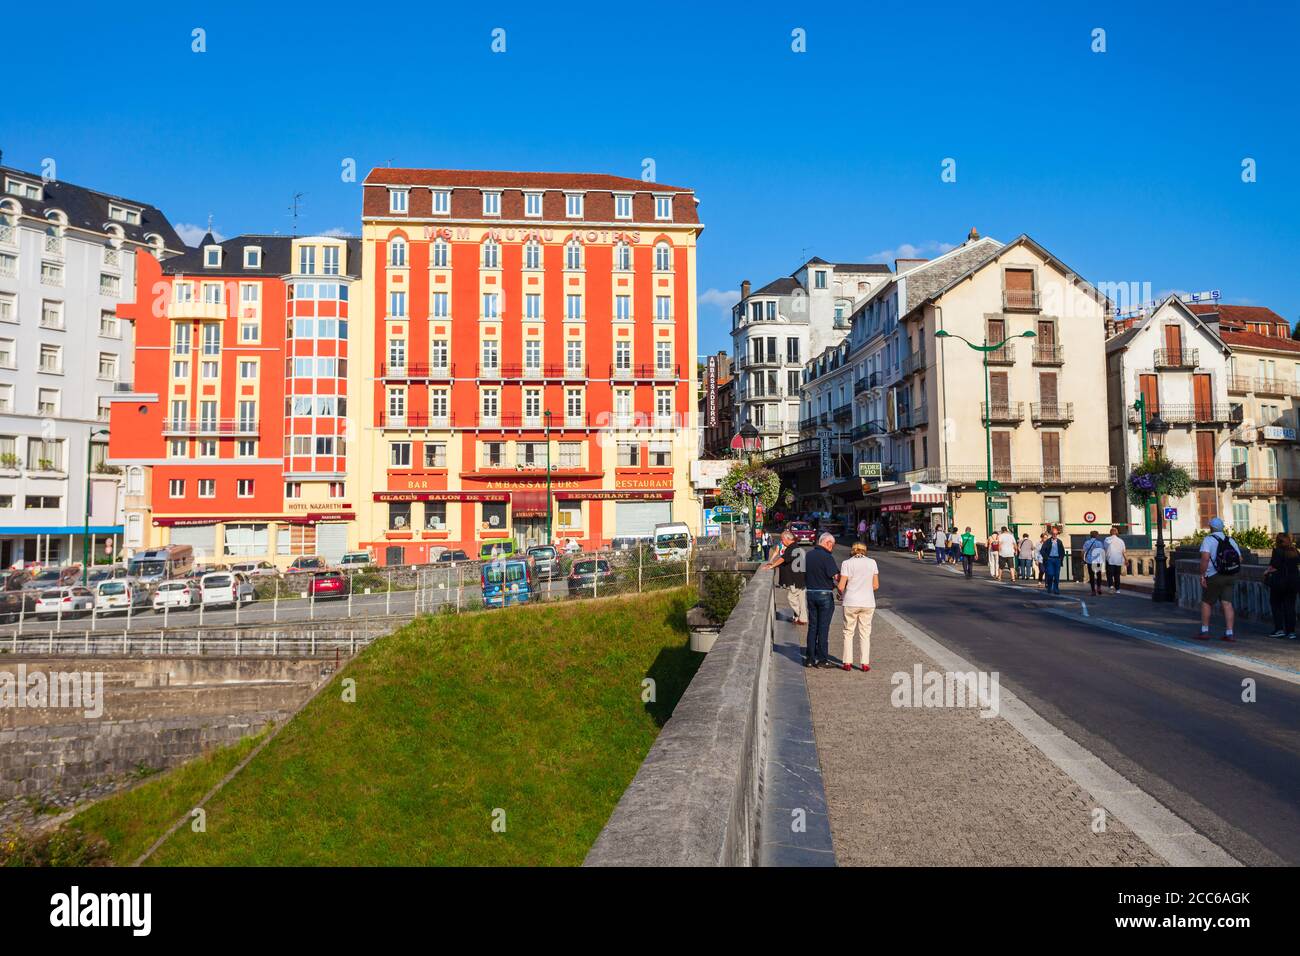 LOURDES, FRANKREICH - 19. SEPTEMBER 2018: Lourdes ist eine kleine Marktstadt am Fuße der Pyrenäen. Stockfoto